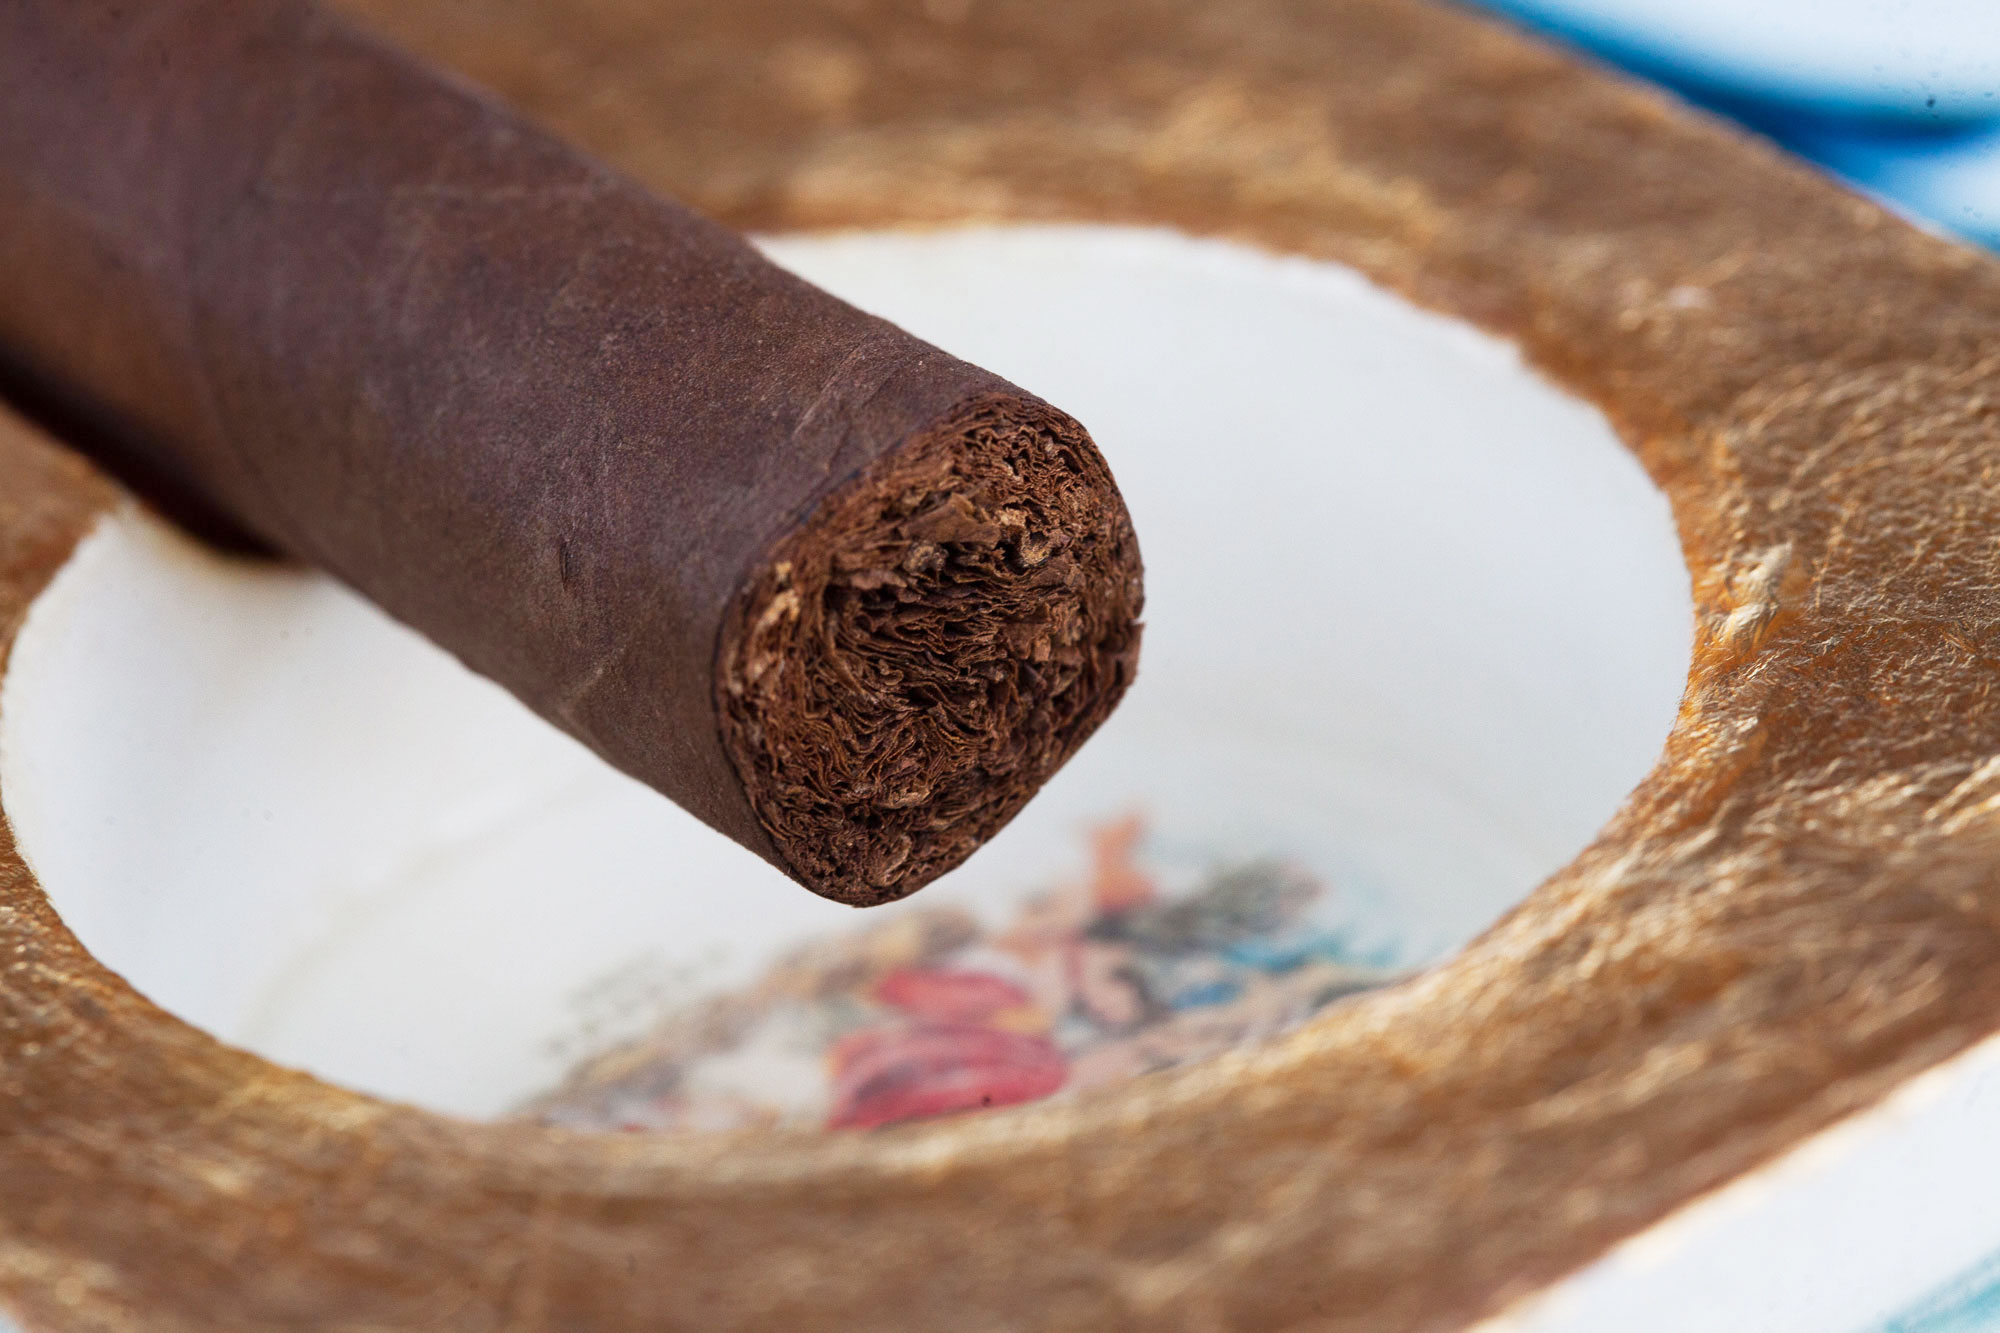 AJ Fernandez Blend 15 cigar